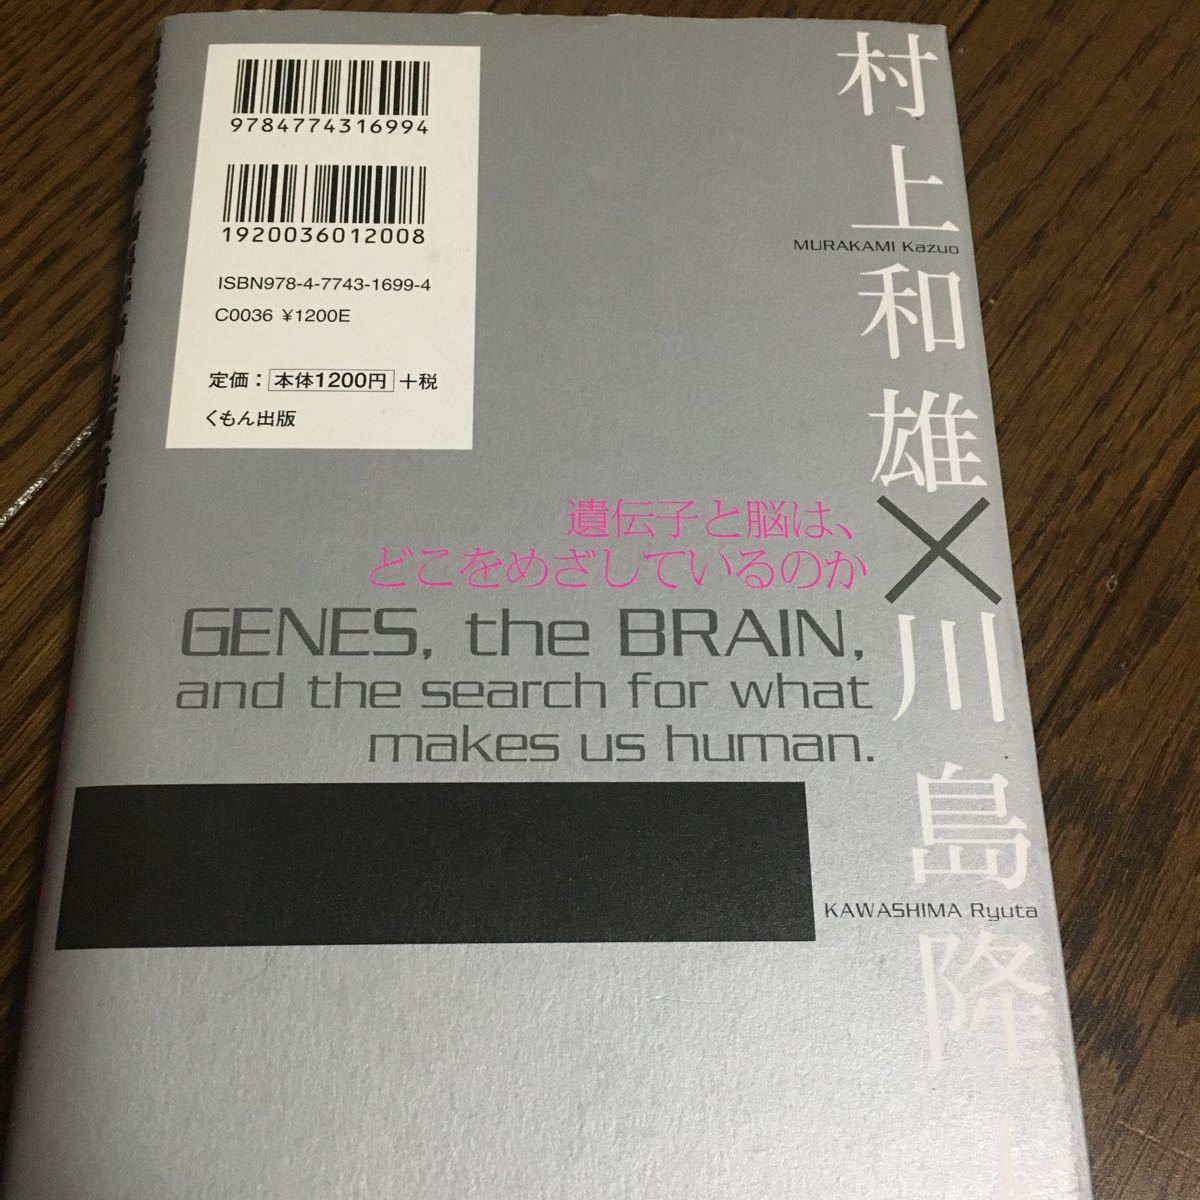 遺伝子学者と脳科学者の往復書簡 今、子どもたちの遺伝子と脳に何が起きているのか? /村上和雄/川島隆太